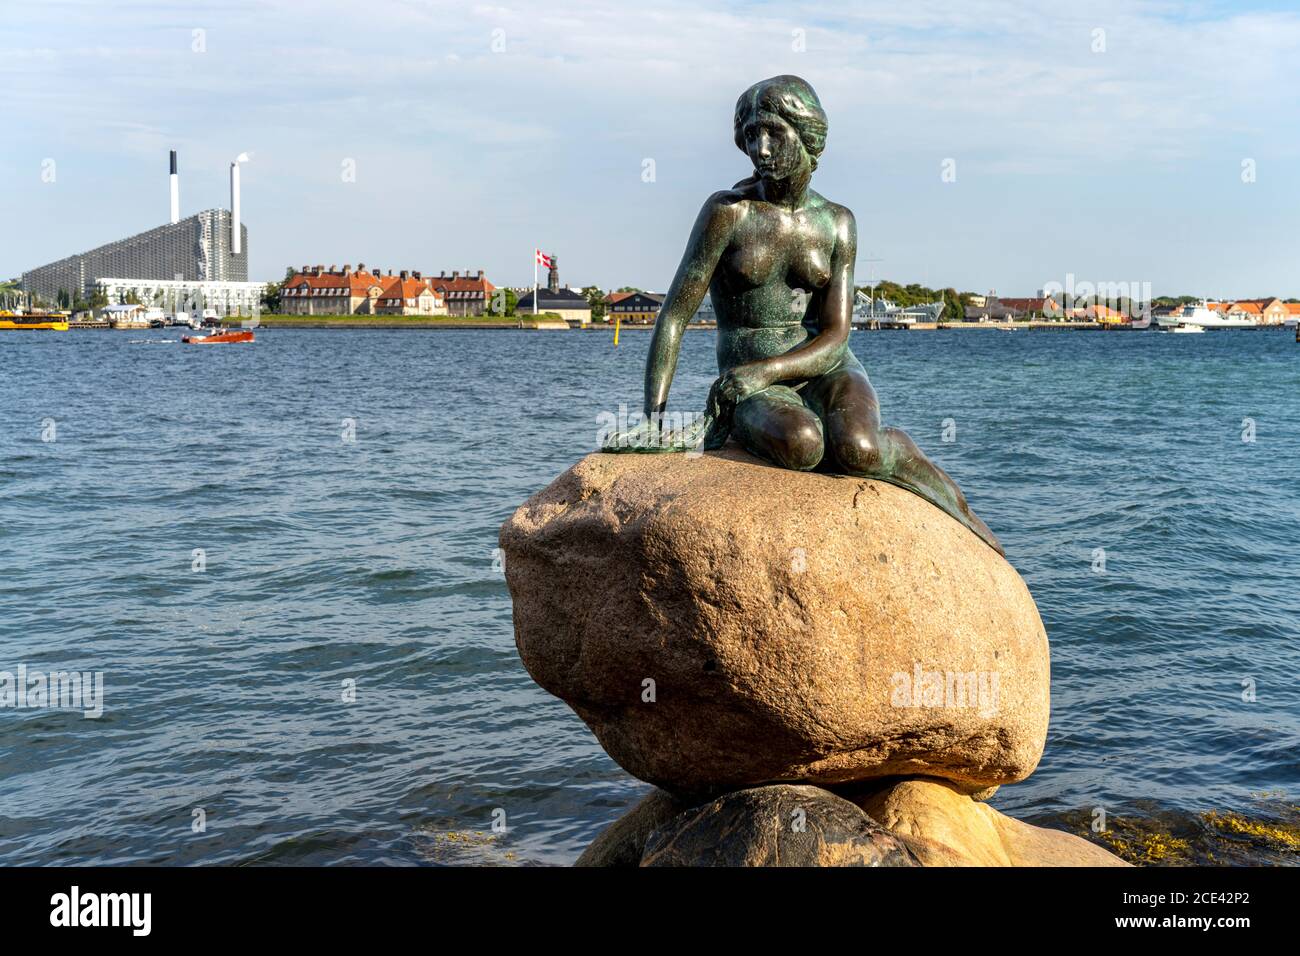 Die berühmte Bronzeefigur die kleine Meerjungfrau - Den lille Havfrue - an der Uferpromenade Langelinie, Kopenhagen, Dänemark, Europa Stockfoto